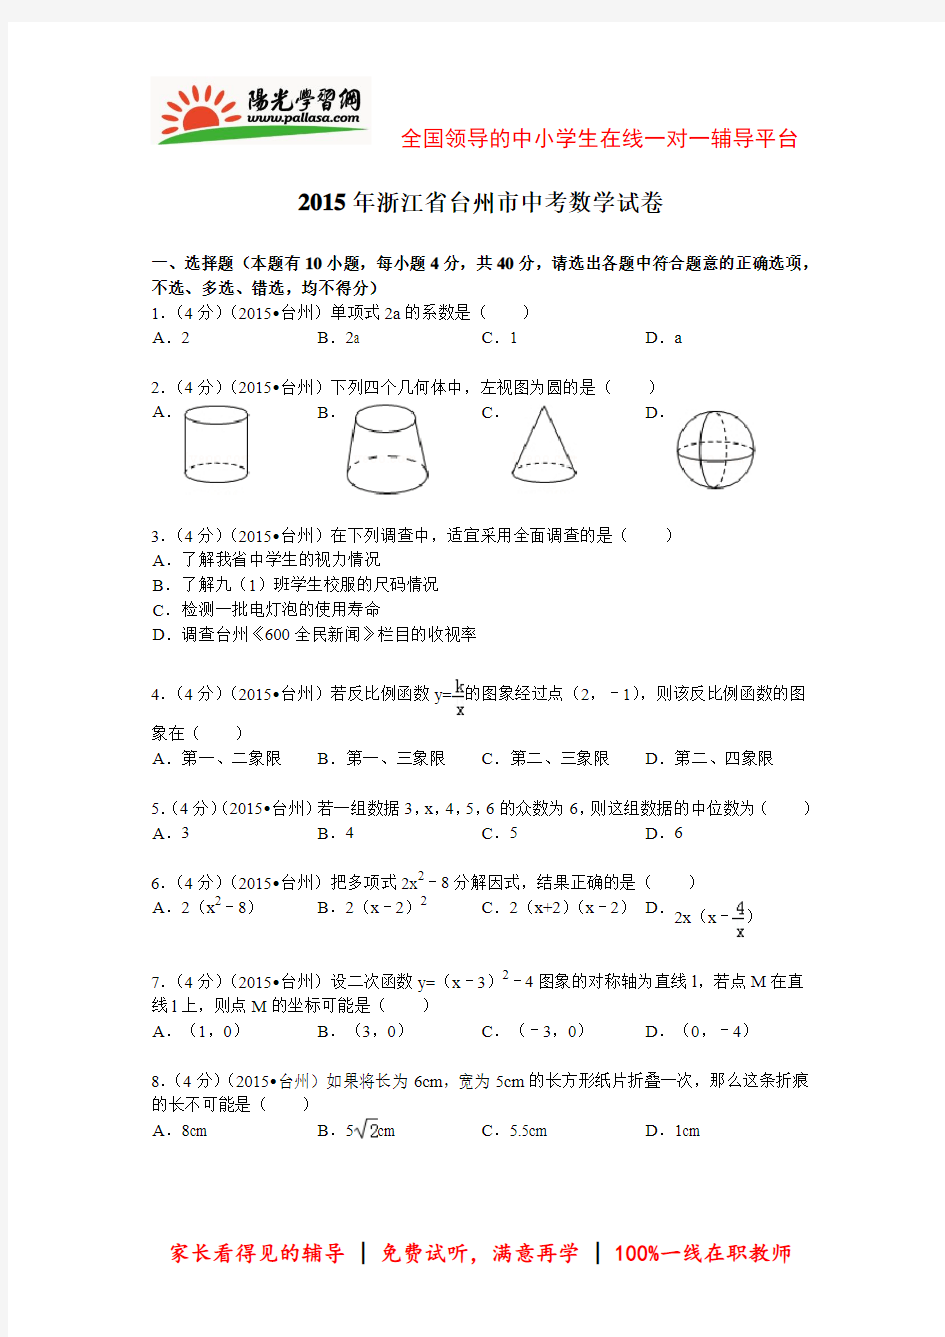 【阳光学习网精选】2015年台州中考数学最新解析版(阳光网特供)